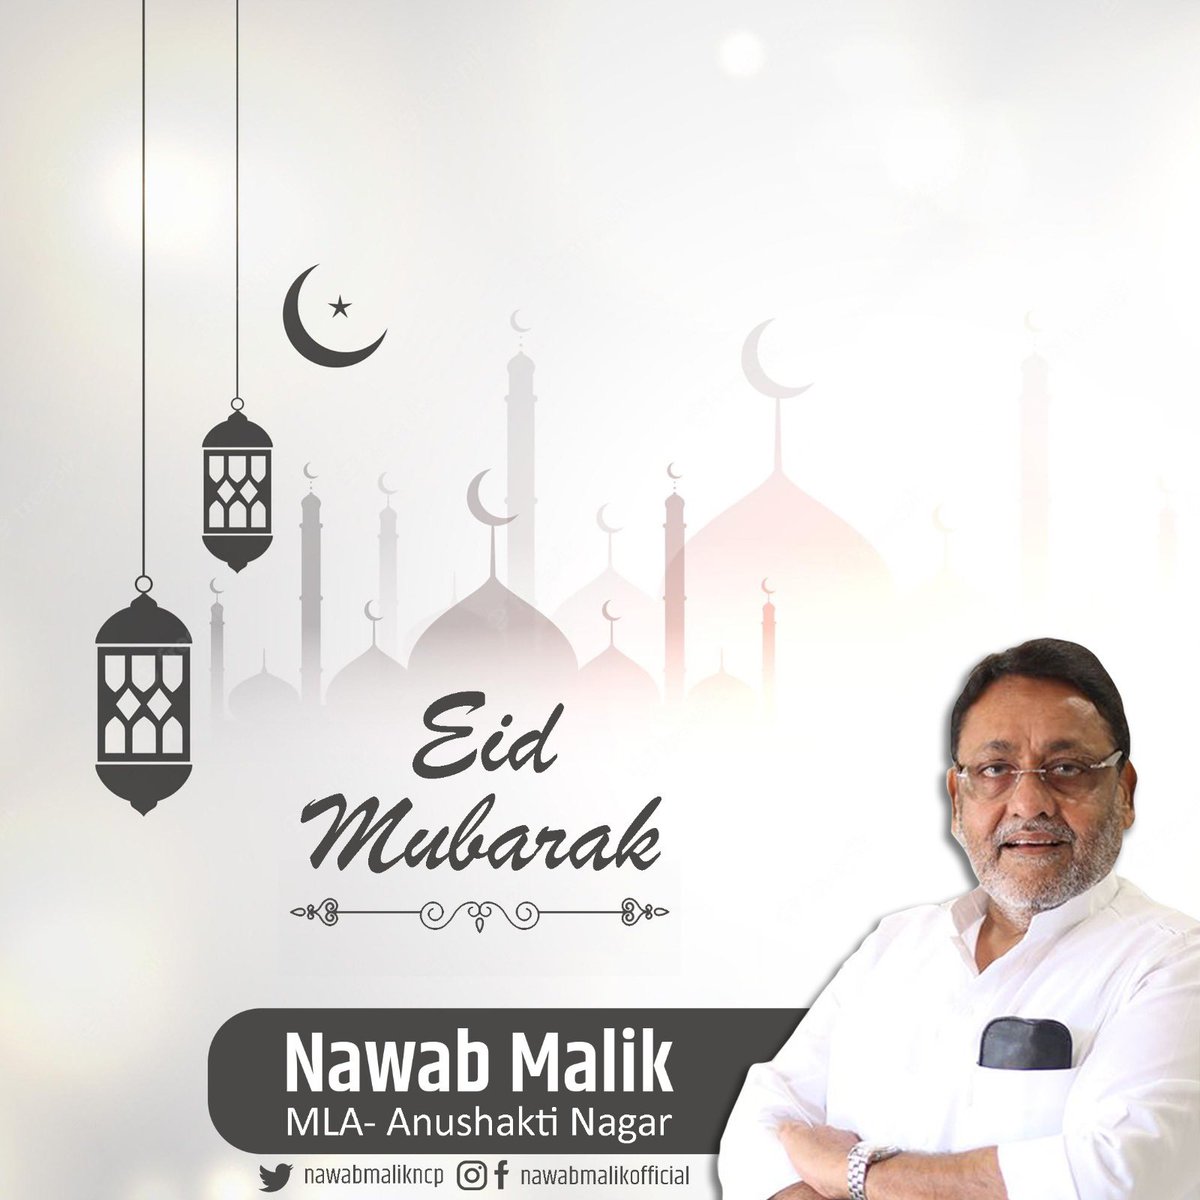 आप सभी को ईद की बहुत बहुत मुबारकबाद! #EidMubarak #Eid #EidulFitr